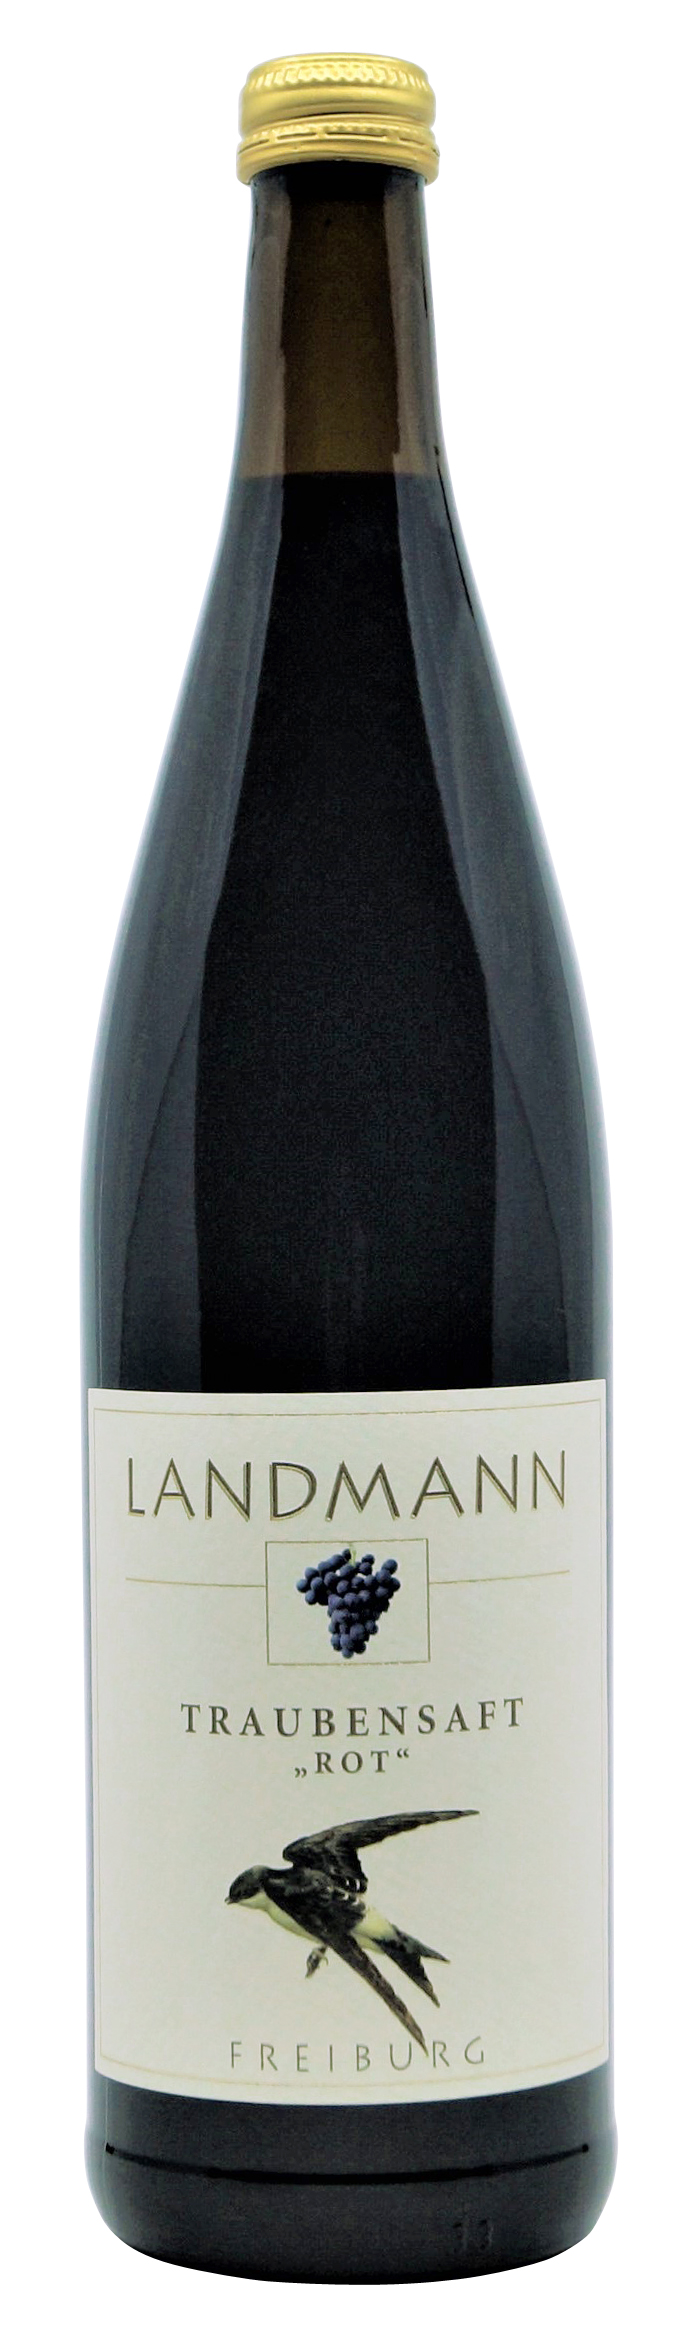 Traubensaft rot von Landmann aus Waltershofen, 0,75 l Flasche ( 6,93 €/ Liter)